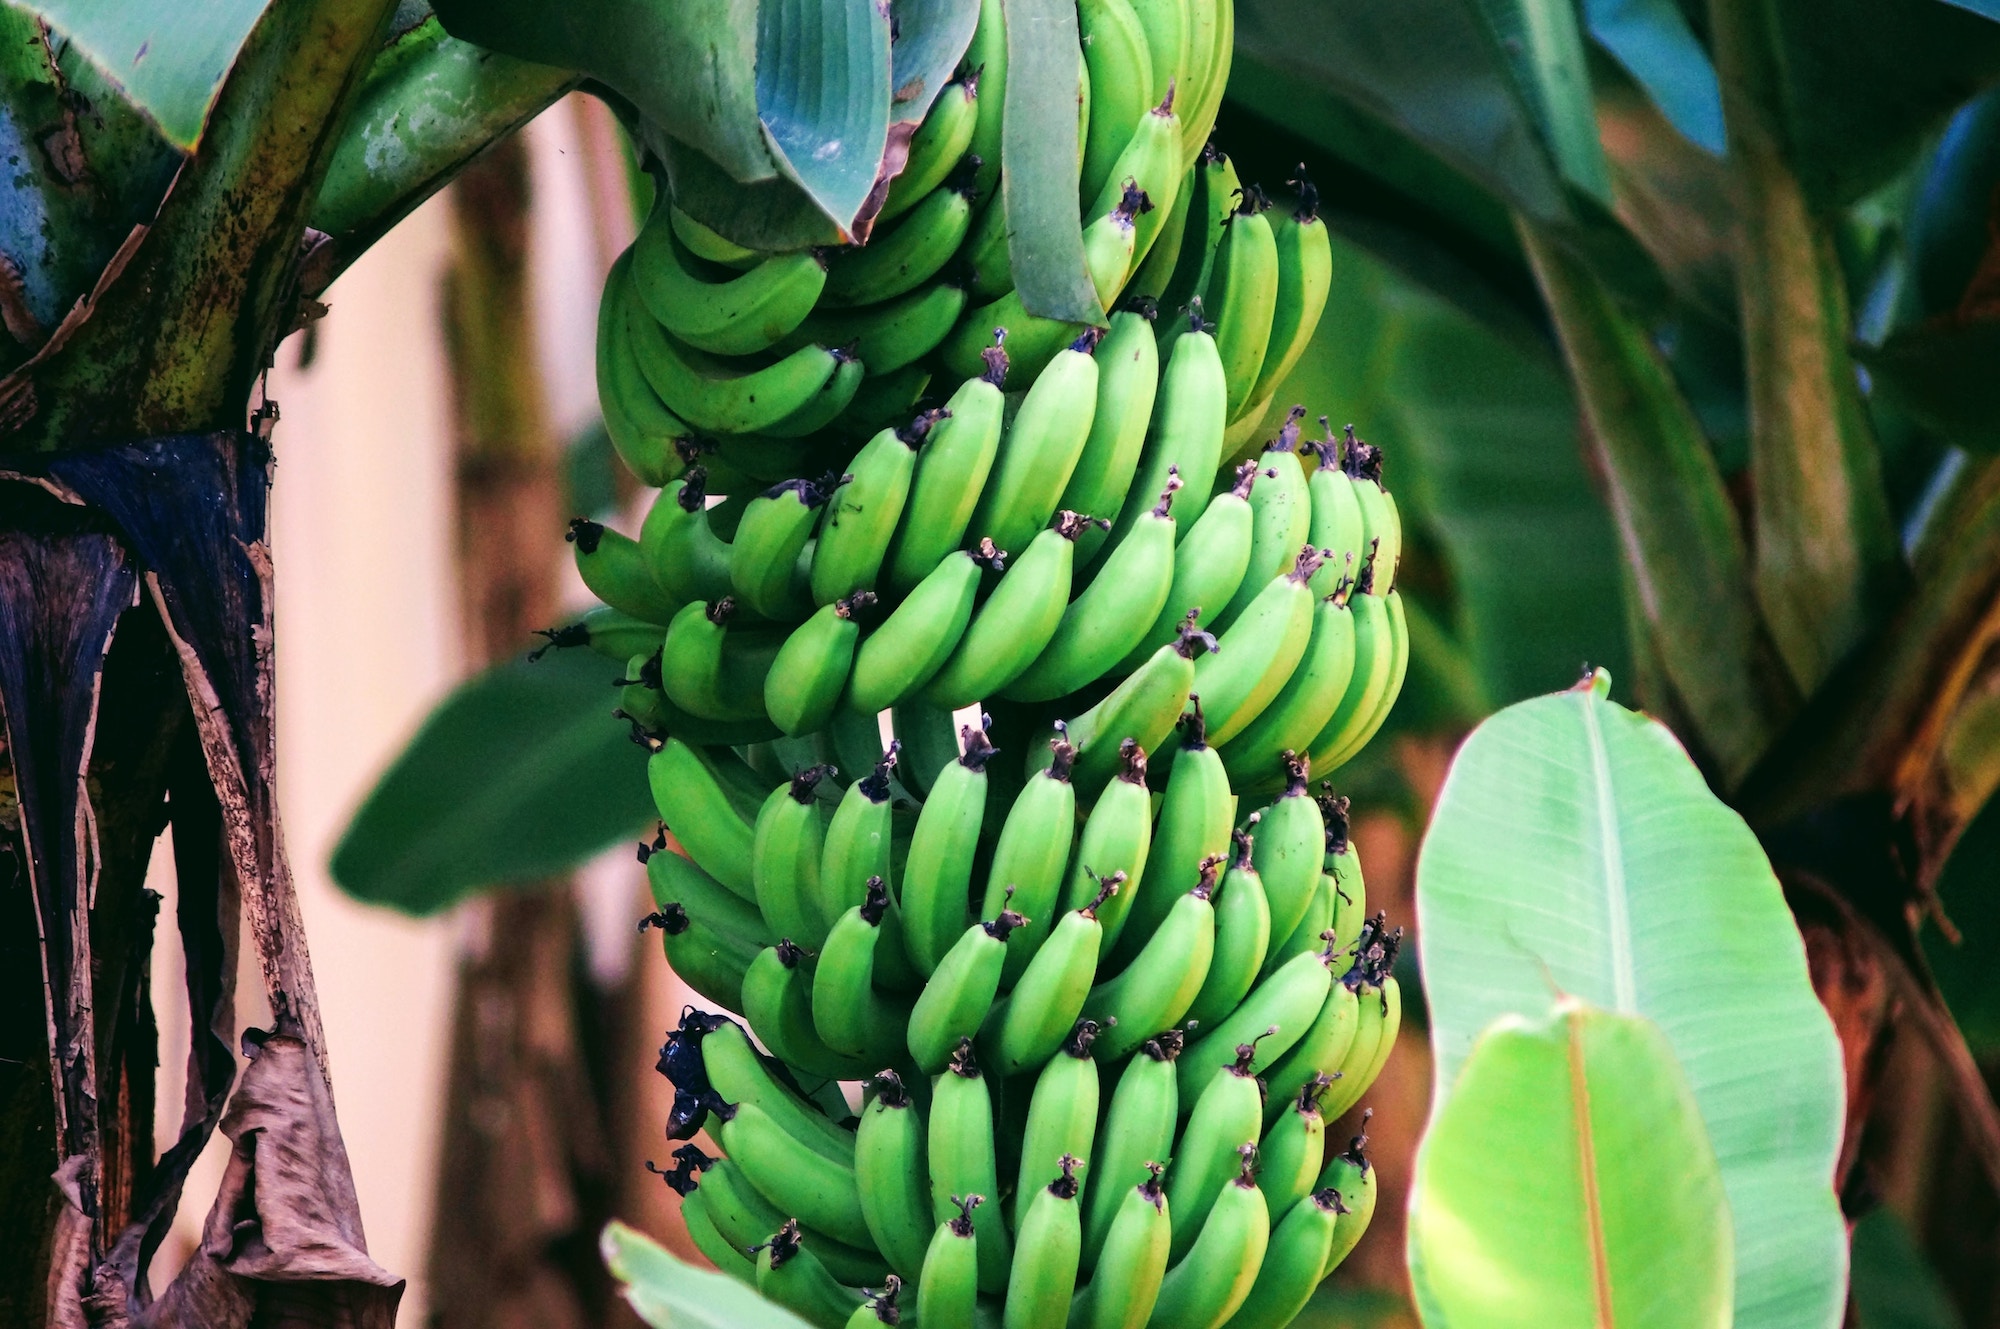 Ανθεκτικό άμυλο: Χάνουν οι μπανάνες τις φυτικές ίνες όταν ωριμάζουν;